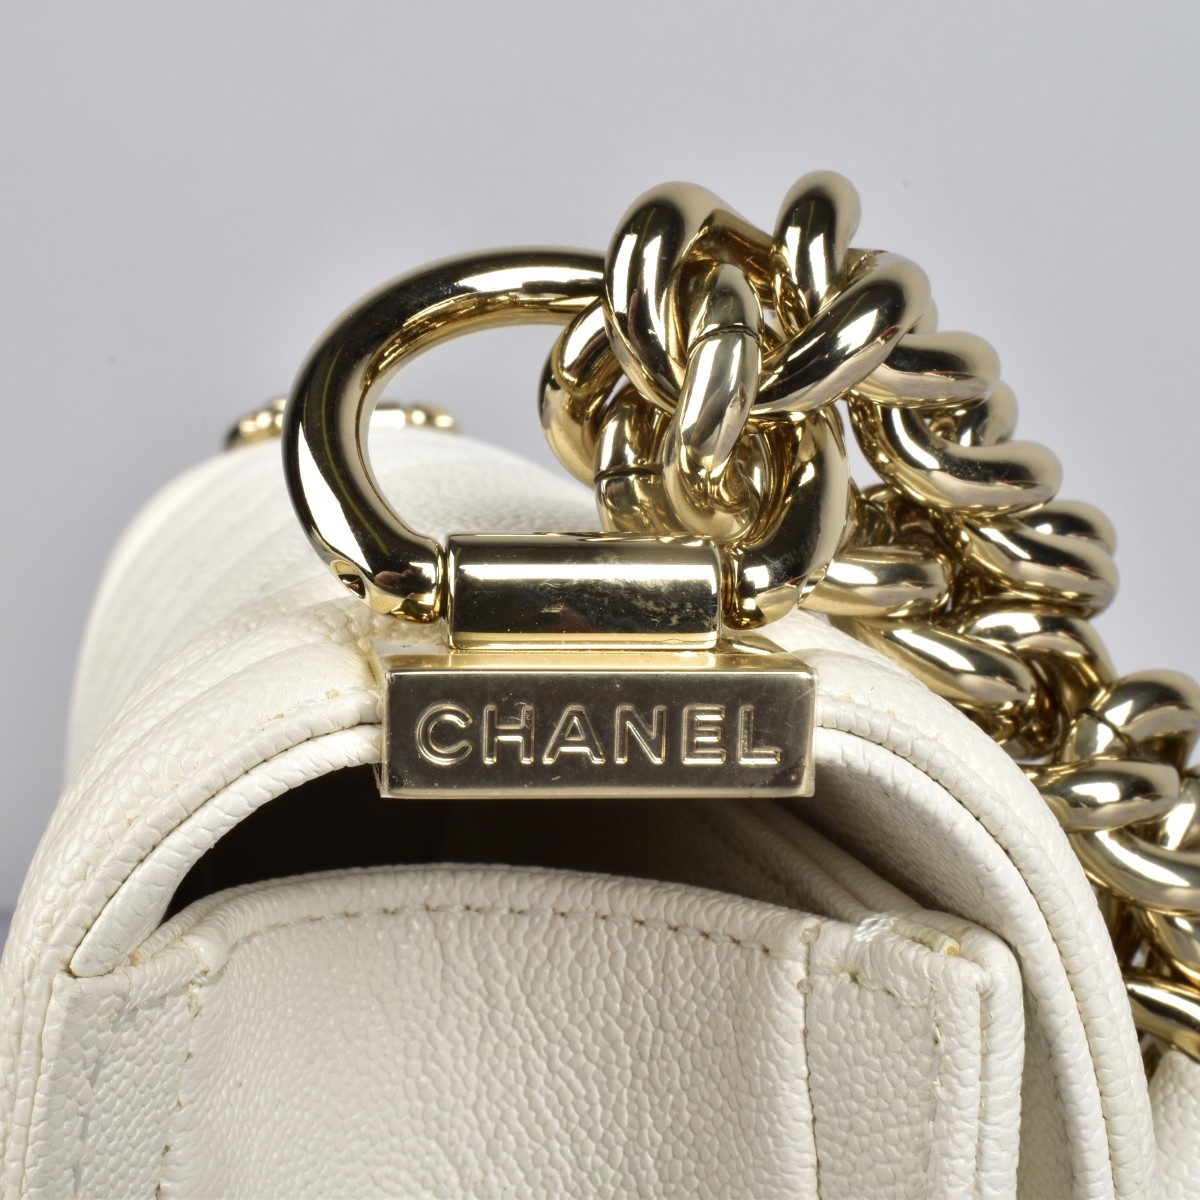 Chanel "Leboy" Shoulder Bag